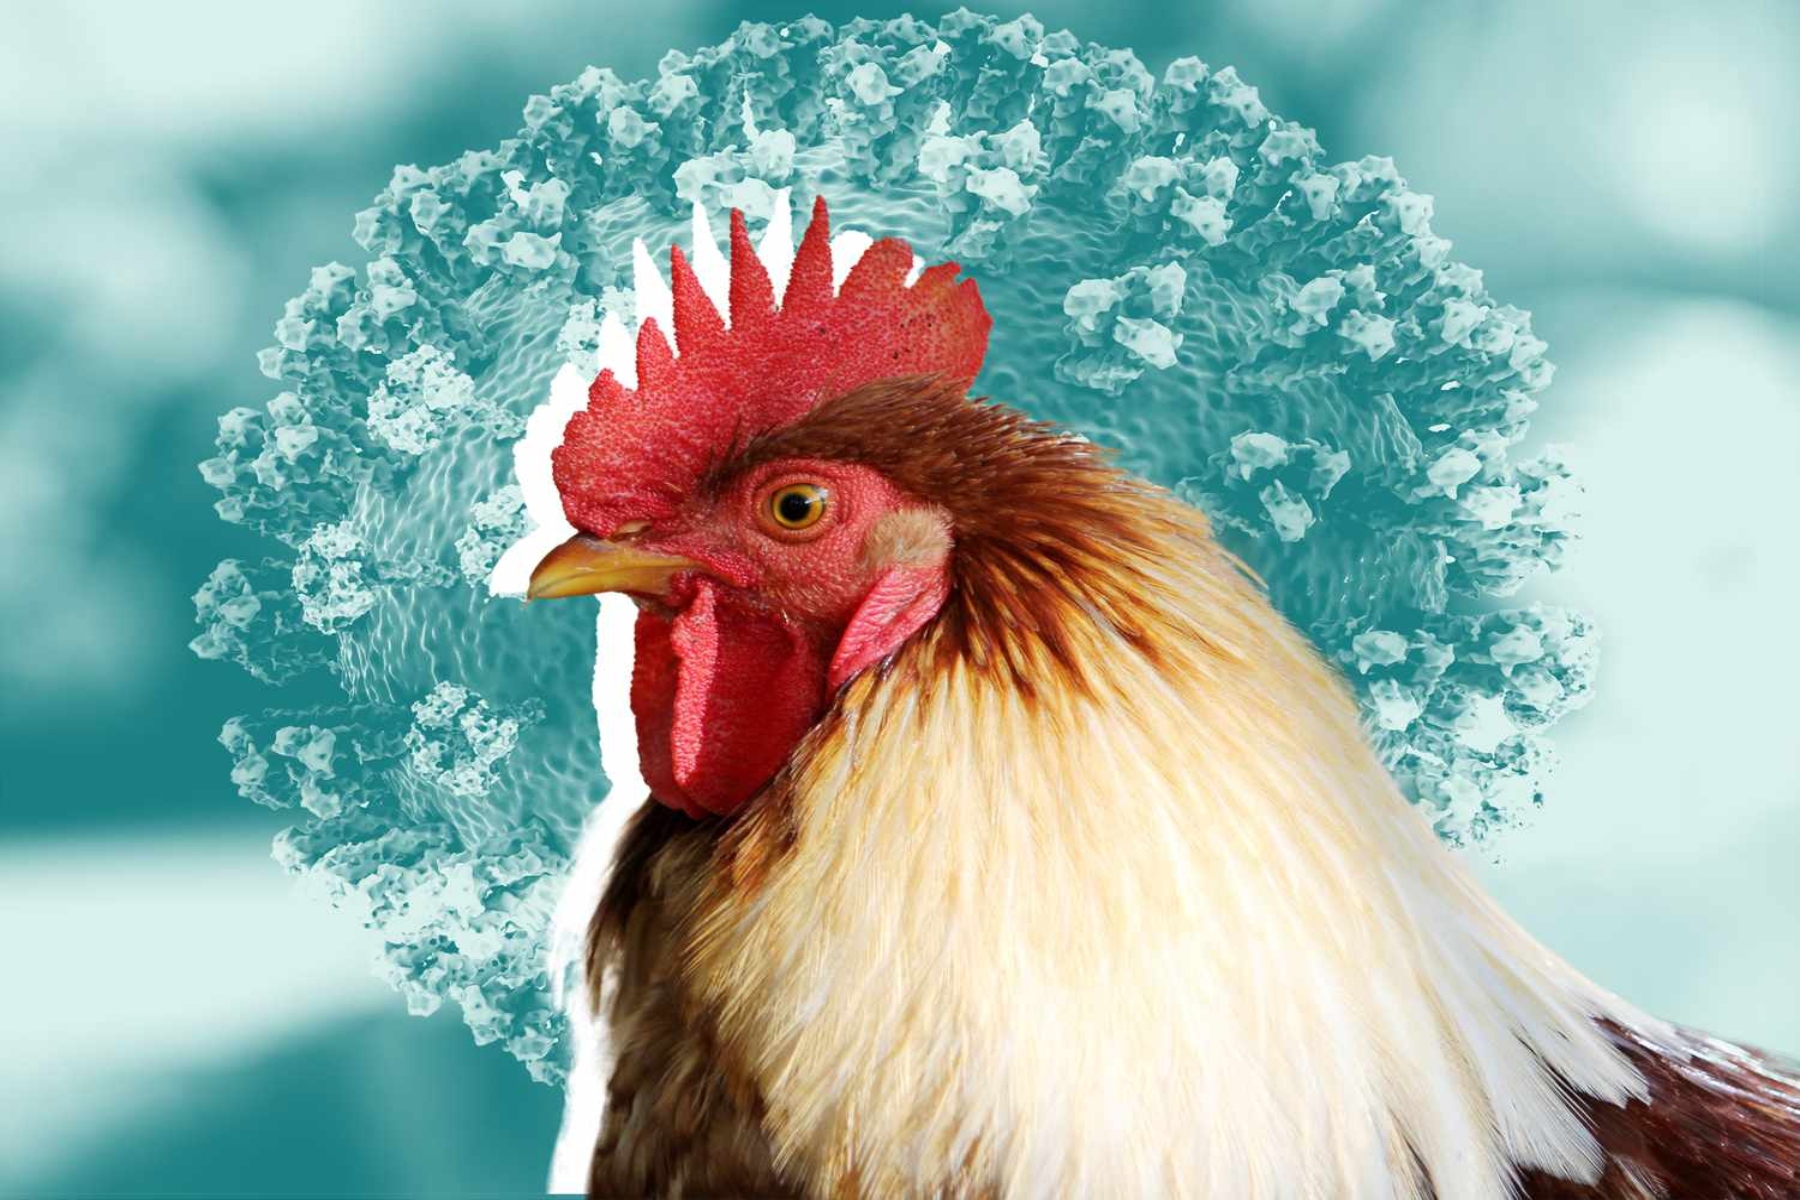 Γρίπη των πτηνών: Ο ιός ανιχνεύθηκε σε βόειο κρέας από άρρωστη γαλακτοπαραγωγική αγελάδα